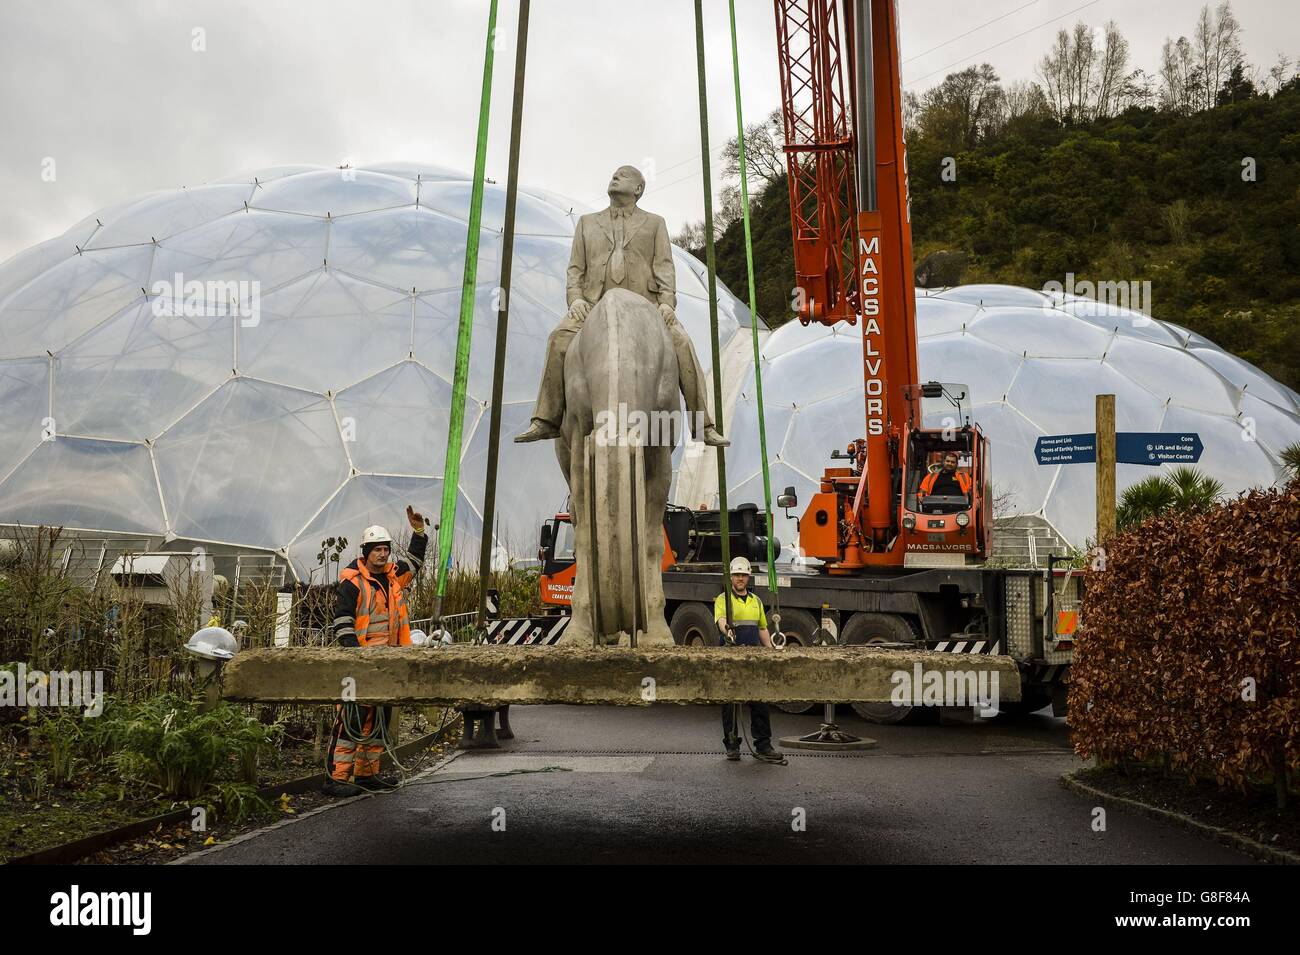 Une sculpture de 8 tonnes 'The Rising Tide', du sculpteur Jason deCaires Taylor, est soulevée devant les biomes au projet Eden de Cornwall pour le Festival de l'espoir. Banque D'Images